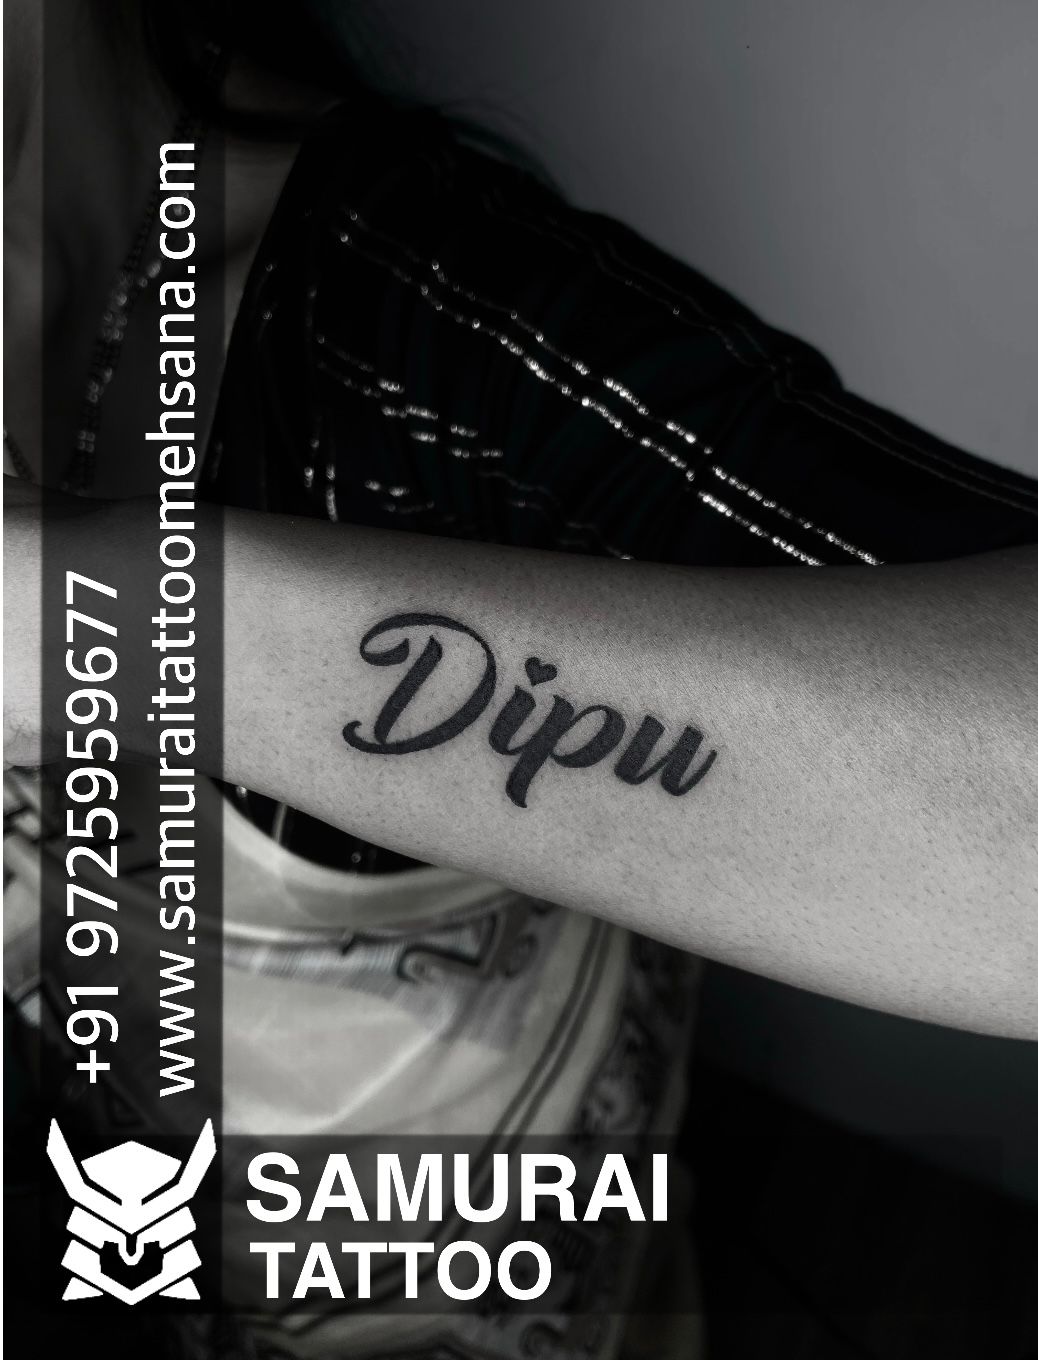 Deepu Tattoo Artist in Narela,Delhi - Best Tattoo Artists in Delhi -  Justdial